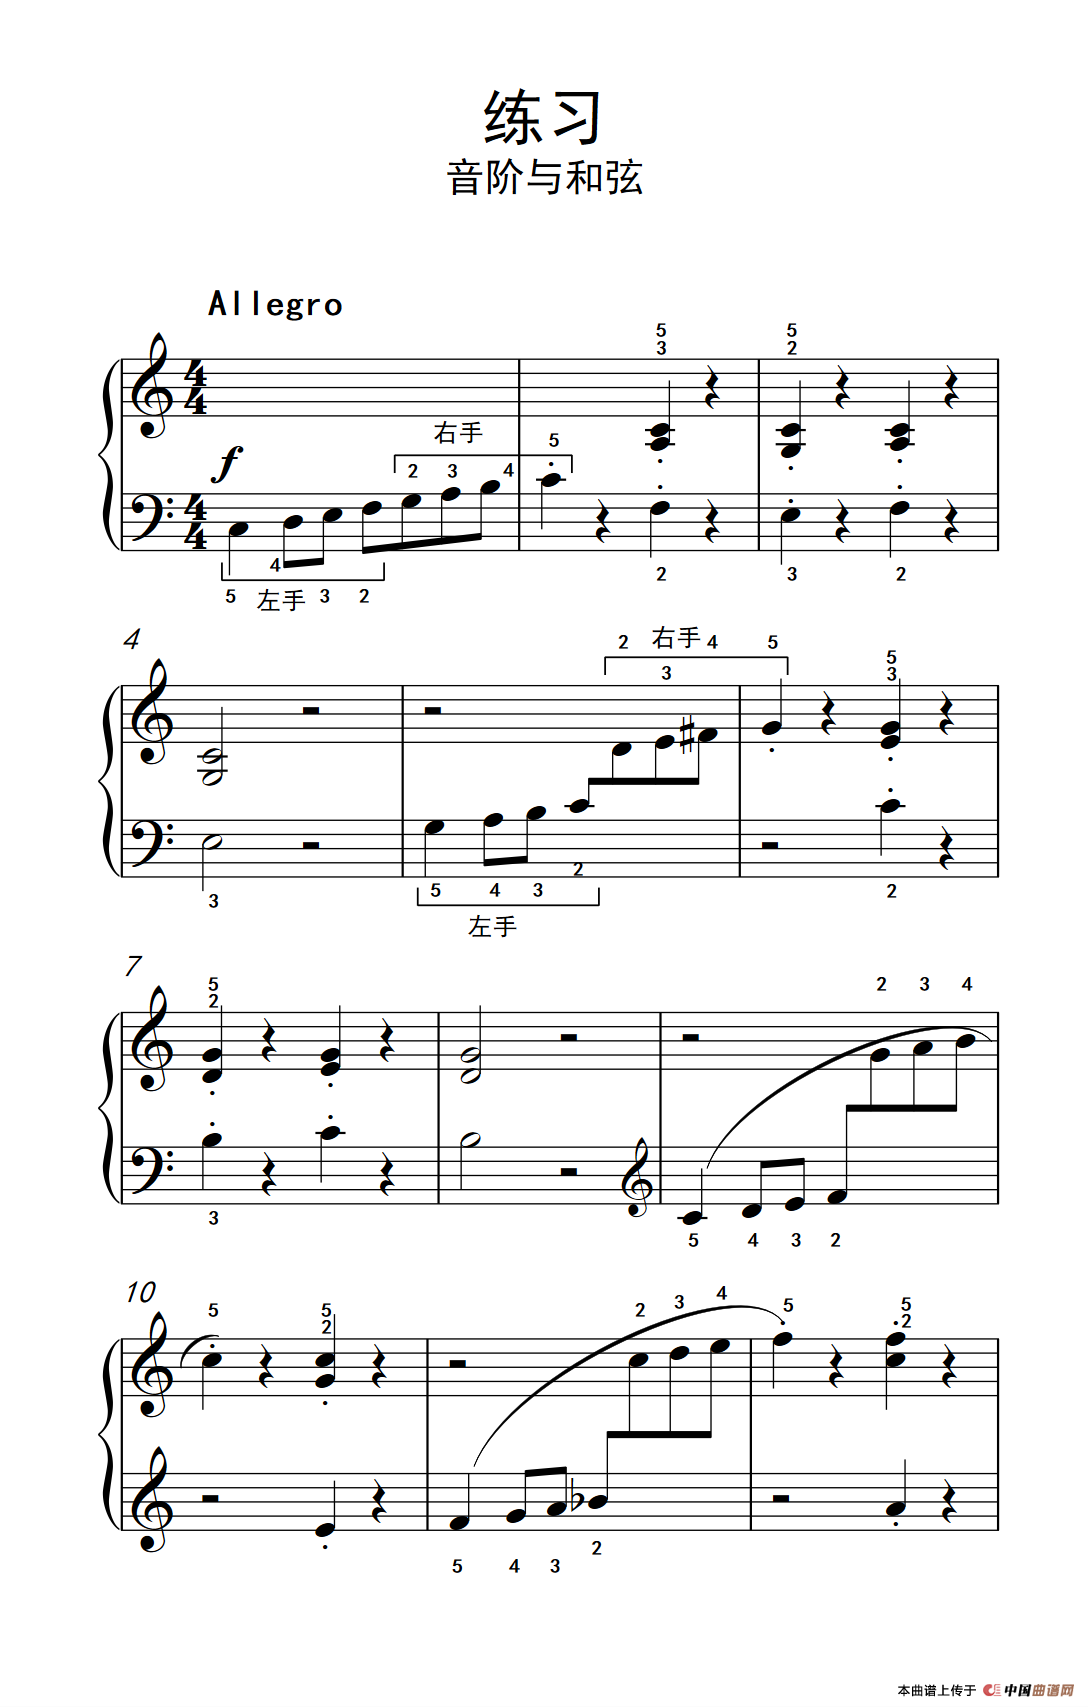 《练习 音阶与和弦》钢琴曲谱图分享